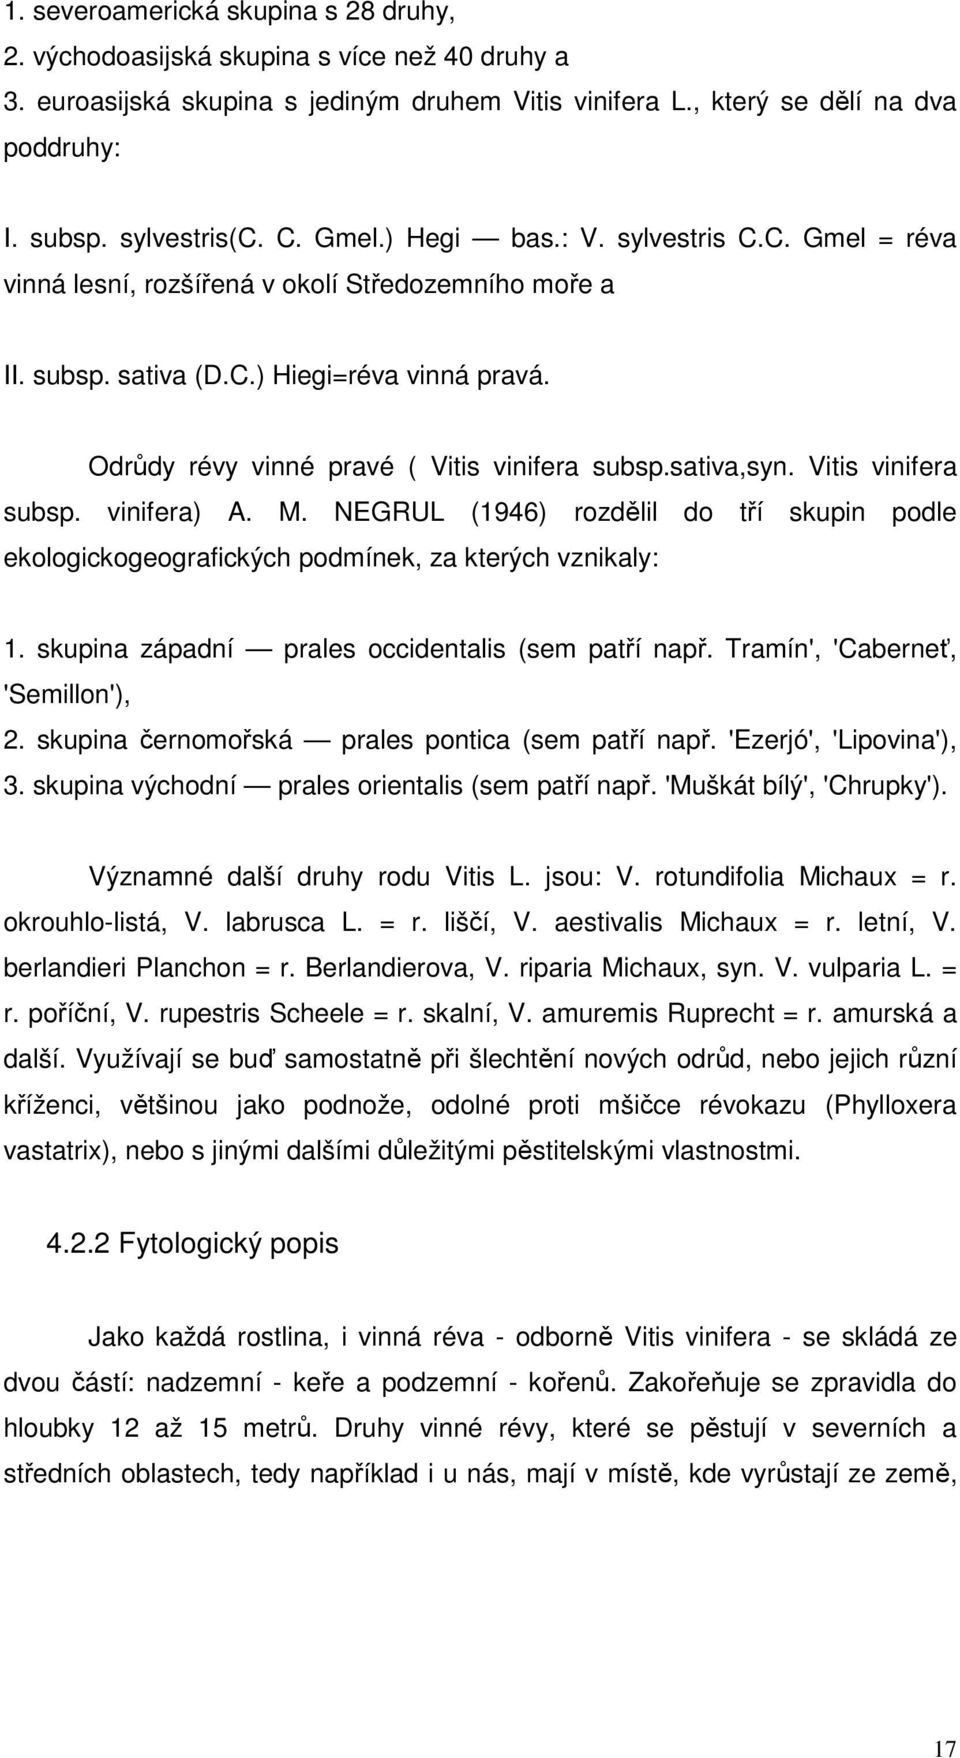 sativa,syn. Vitis vinifera subsp. vinifera) A. M. NEGRUL (1946) rozdělil do tří skupin podle ekologickogeografických podmínek, za kterých vznikaly: 1.